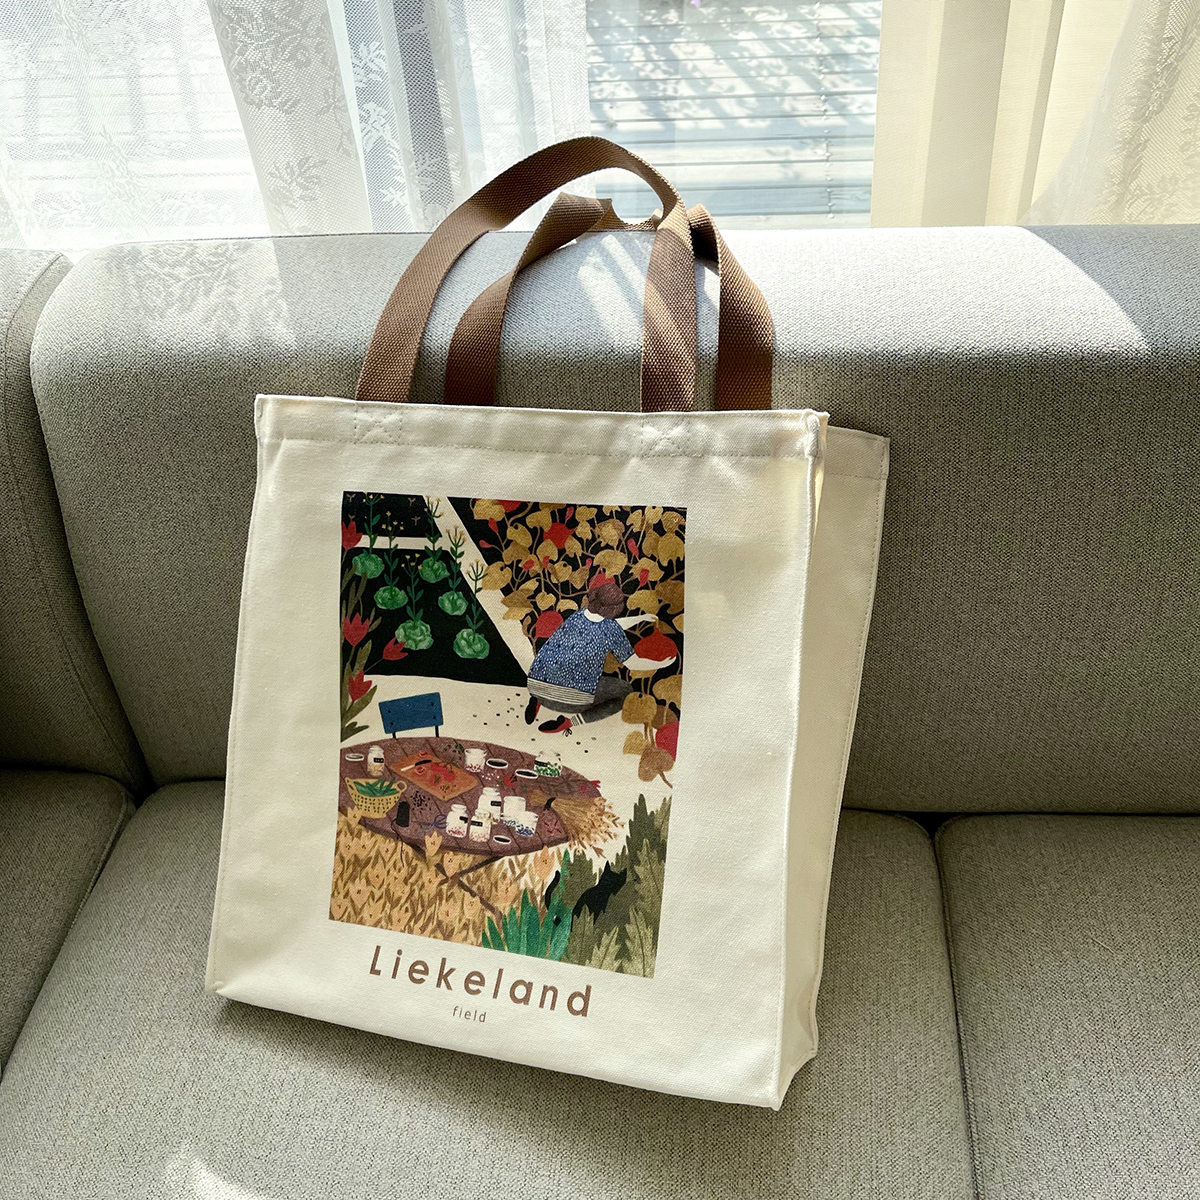 荷兰艺术家Liekeland插画帆布袋竖款治愈印花环保购物袋通勤女包